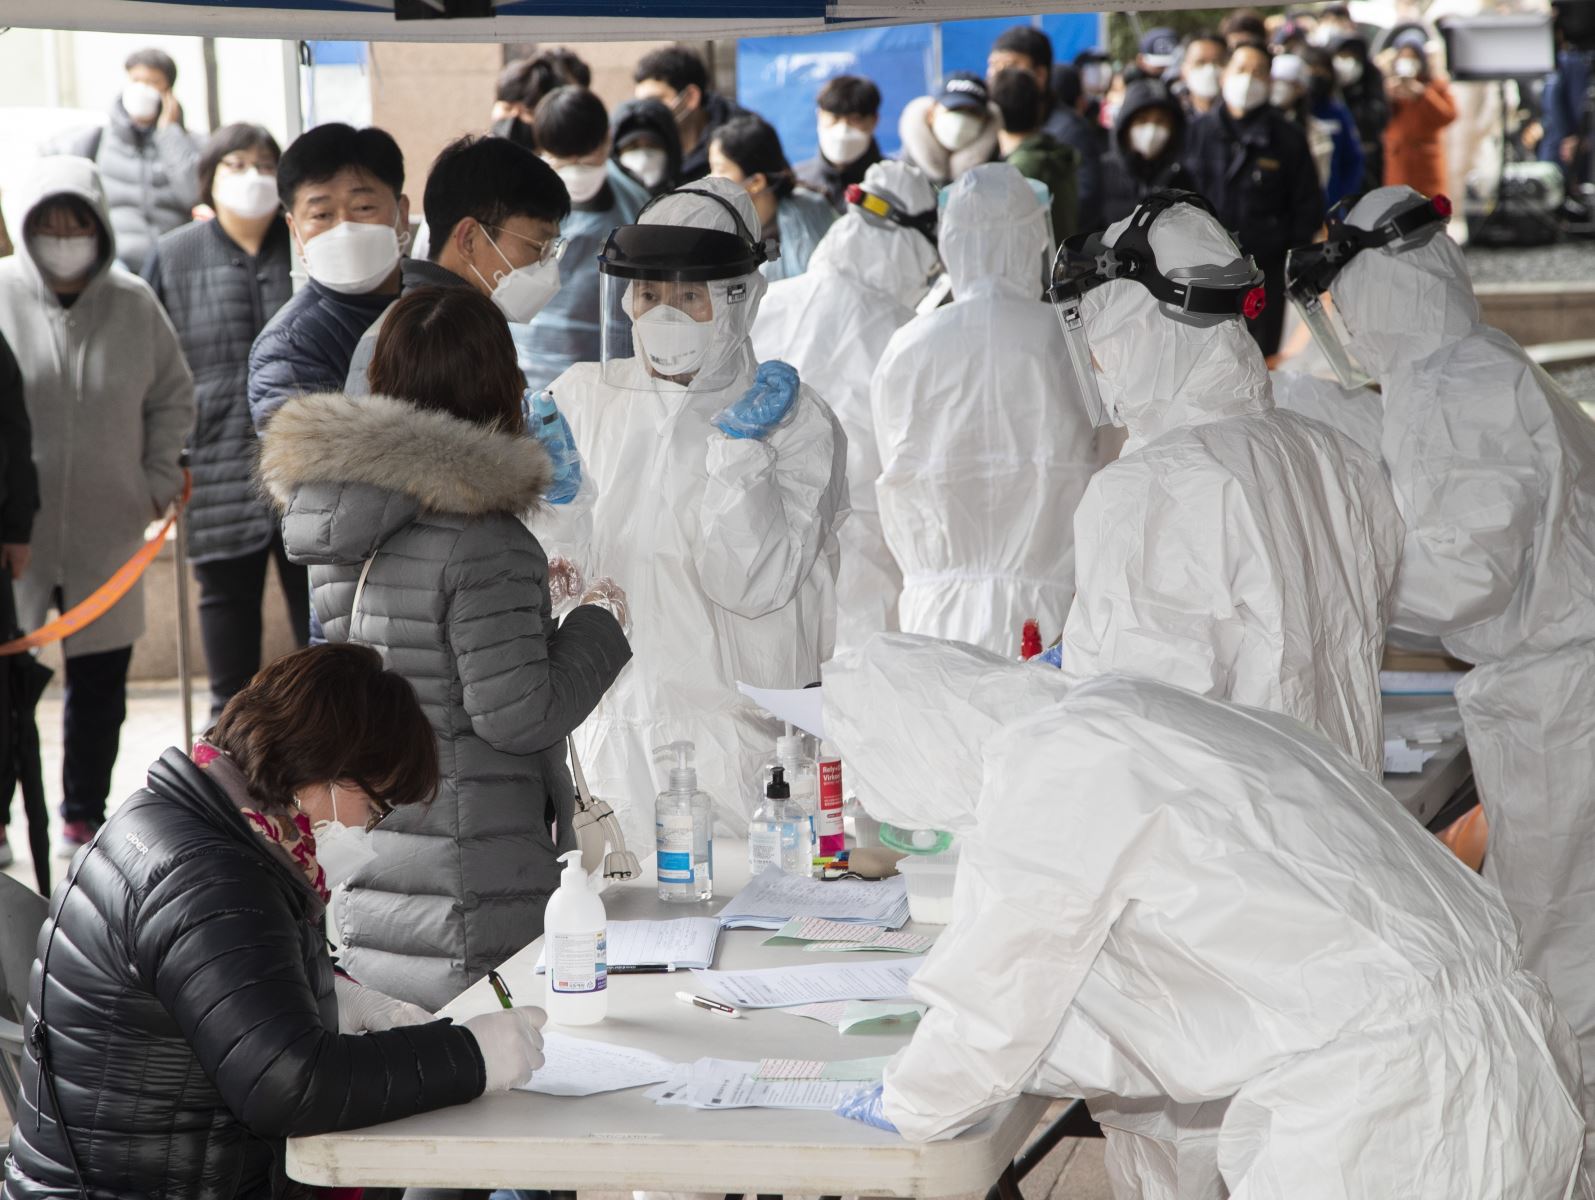 Bệnh nhân xếp hàng chờ đăng ký lấy mẫu xét nghiệm COVID-19 tại Seoul, Hàn Quốc ngày 10/3/2020. Ảnh: THX/TTXVN